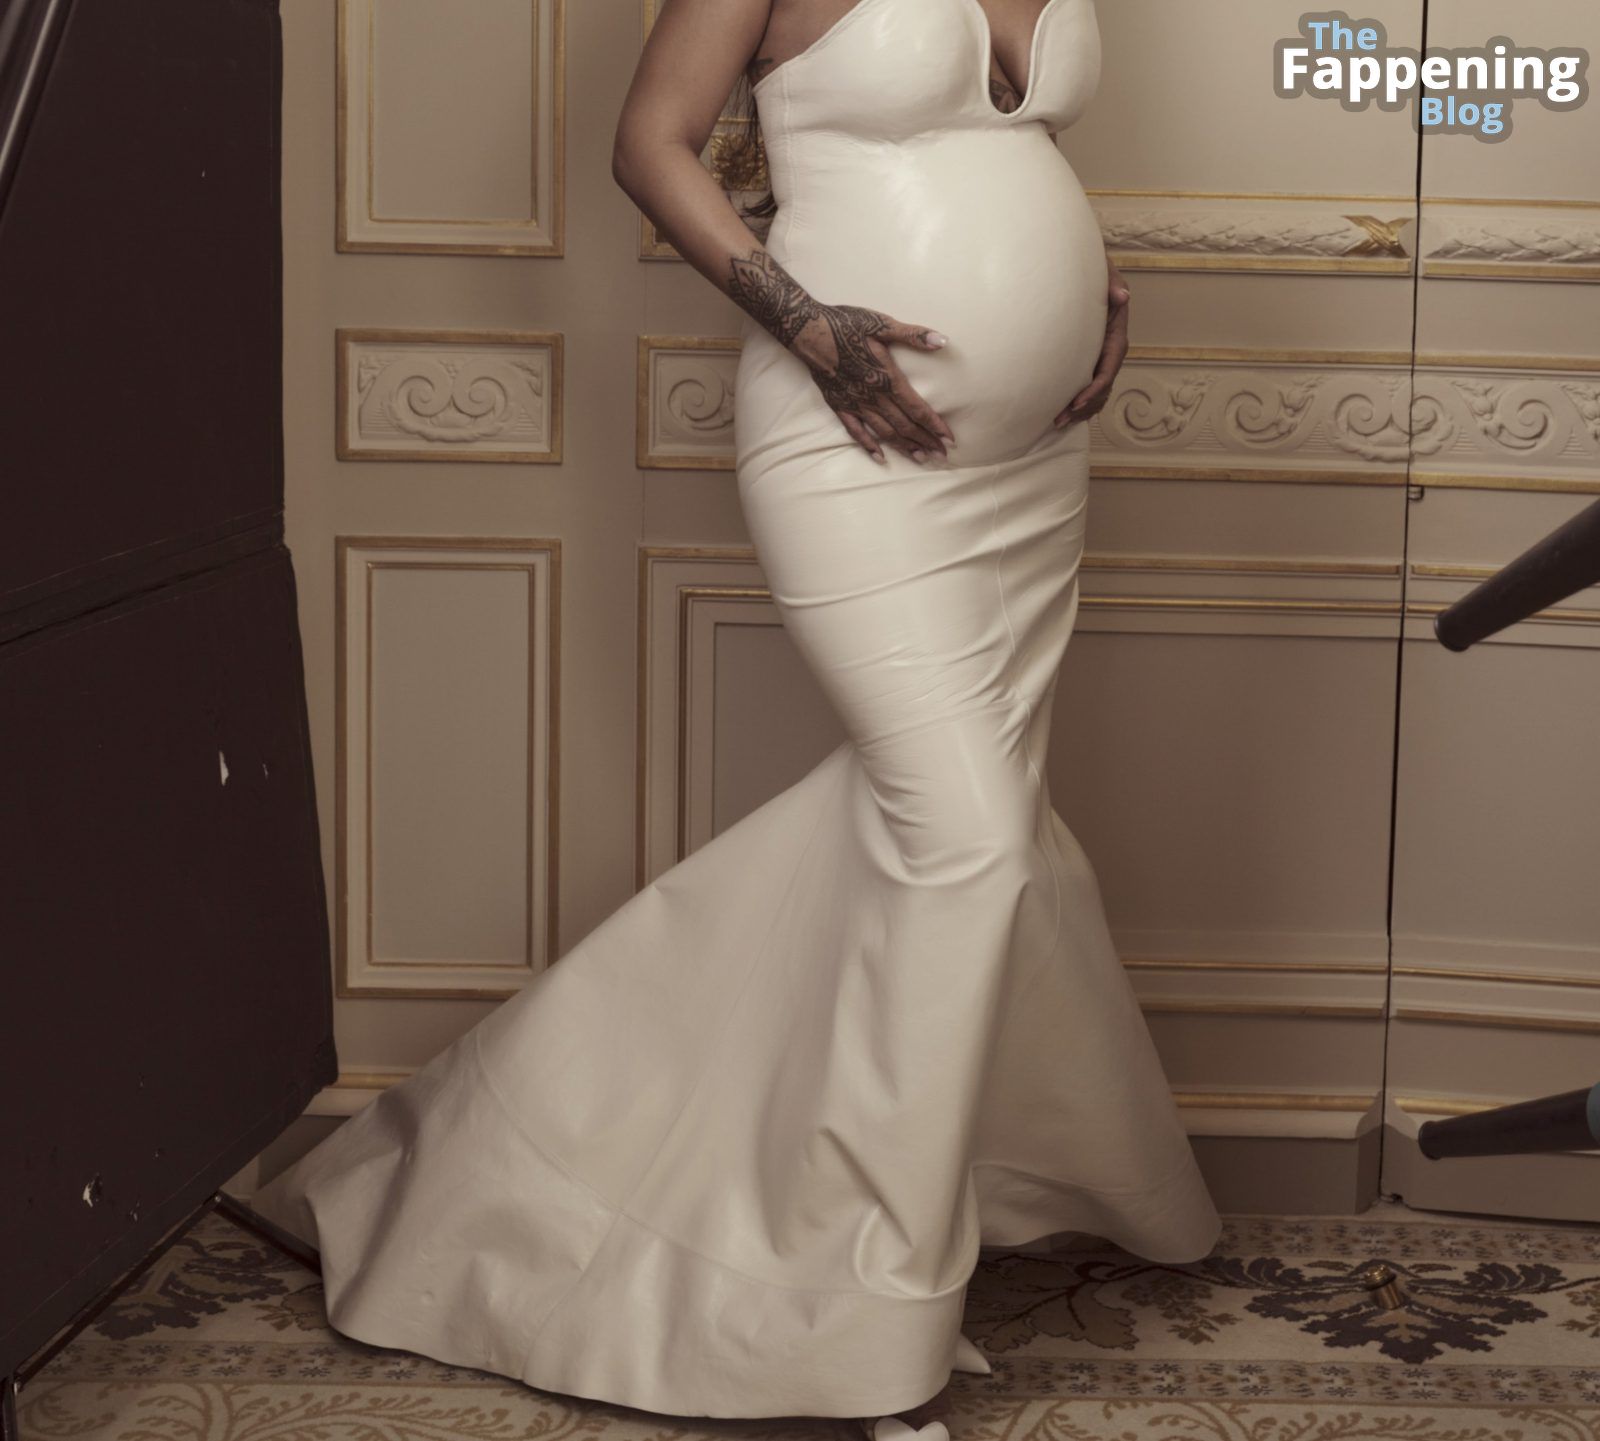 rihanna-pregnant-topless-nipples-vogue-photo-shoot-7-thefappeningblog.com_.jpg